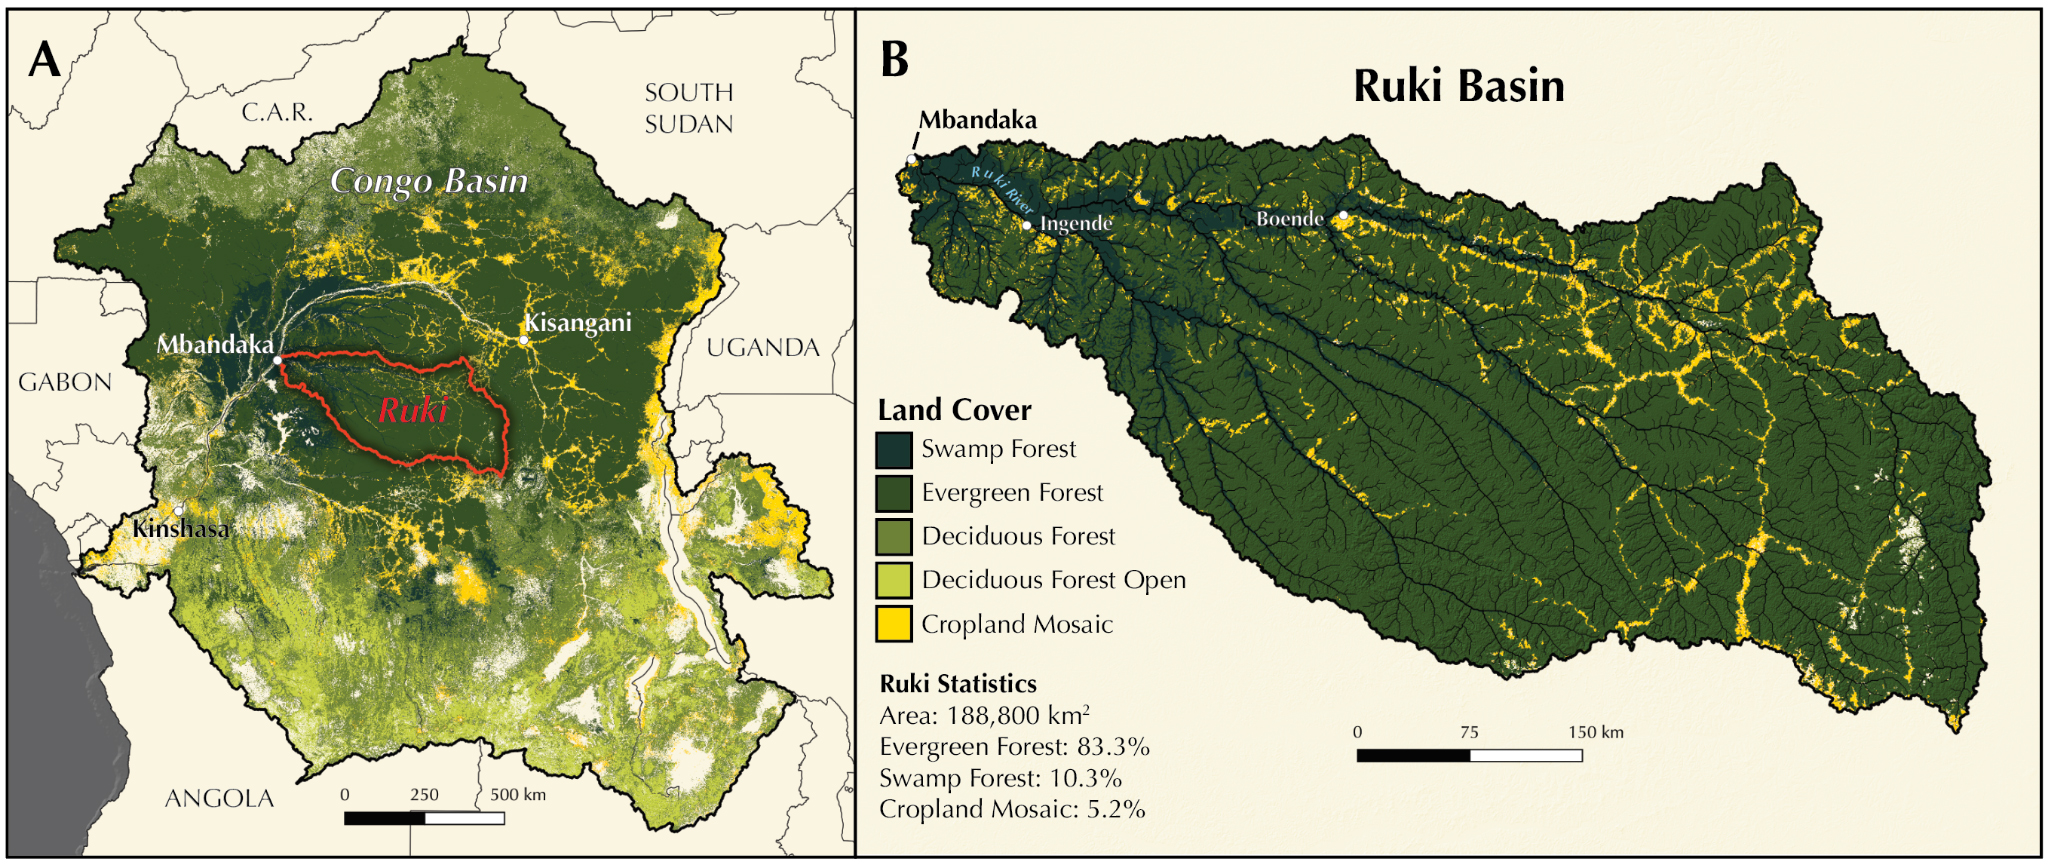 Vergrösserte Ansicht: Karte, welche das Ruki-Becken in der Demokratischen Republik Kongo zeigt (links) und Karte, die die Ruki Basin zeigt (rechts)